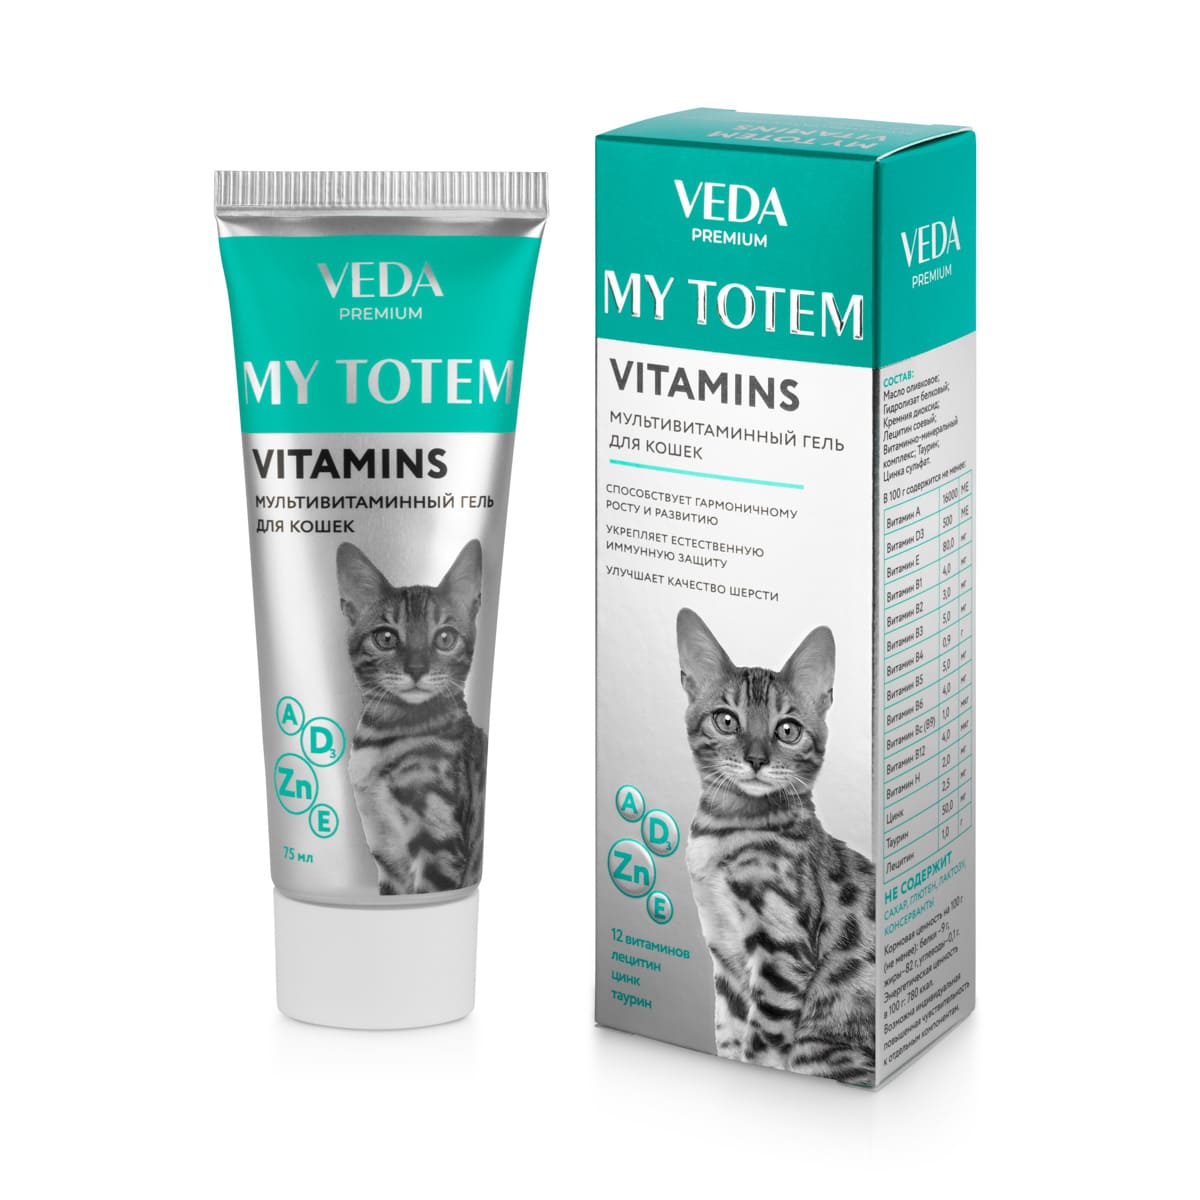 My Totem Vitamins мультивитаминный гель для кошек 75 мл